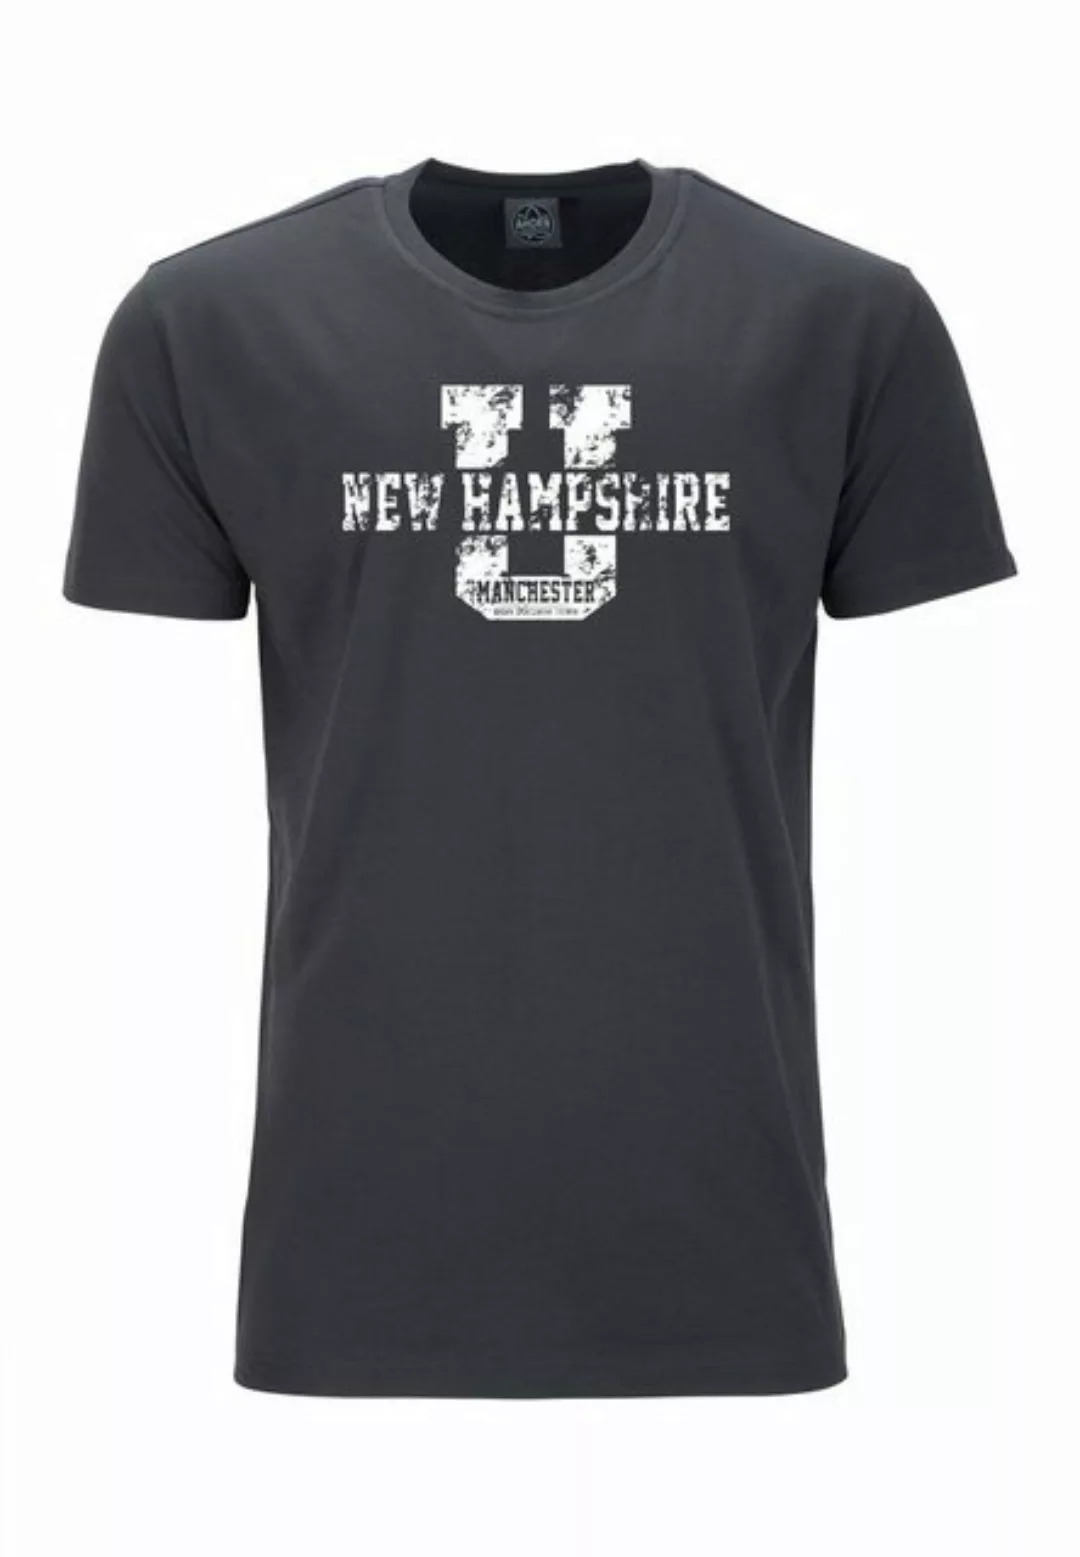 AHORN SPORTSWEAR T-Shirt NEW HAMPSHIRE mit coolem Frontprint günstig online kaufen